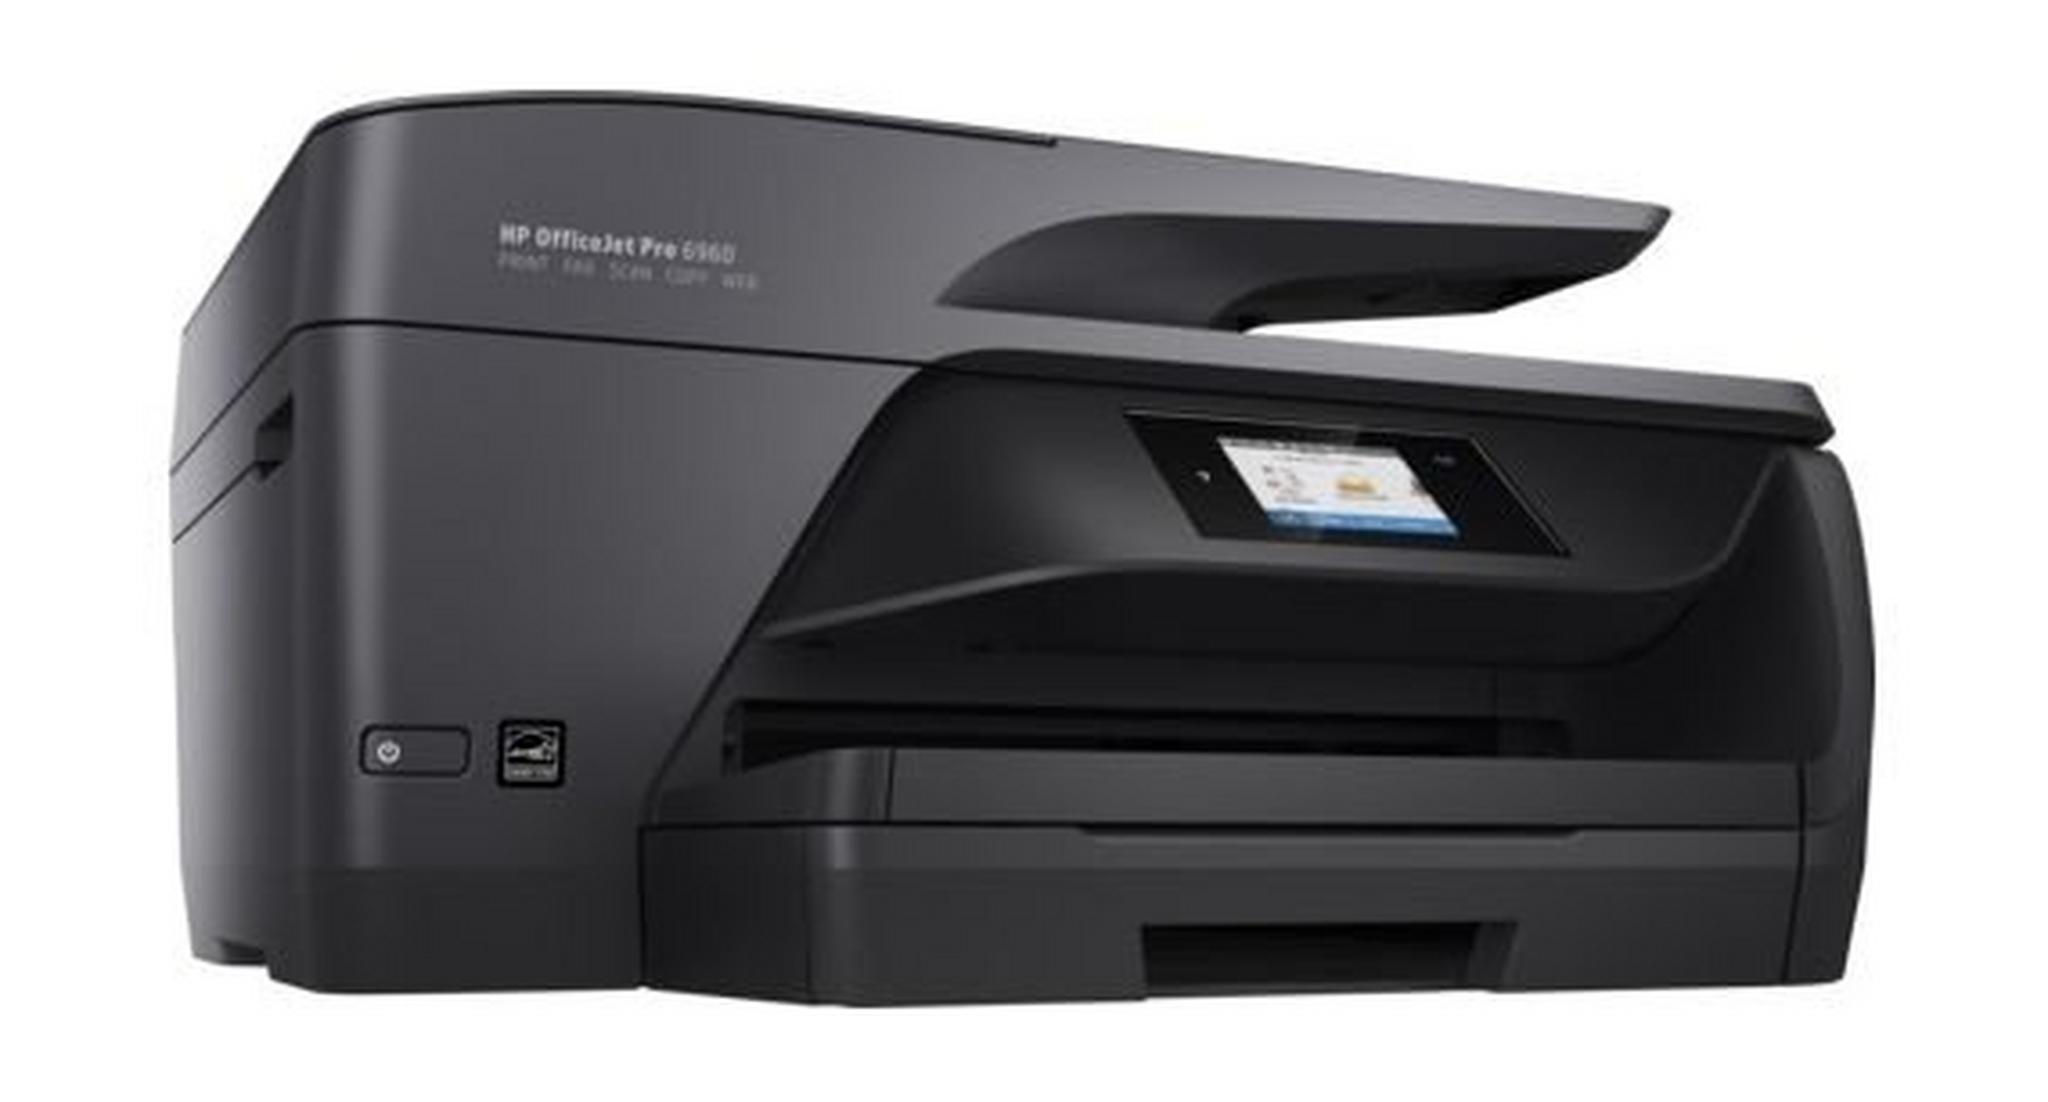 HP OfficeJet Pro 6960 All-in-One Printer (J7K33A) – Black